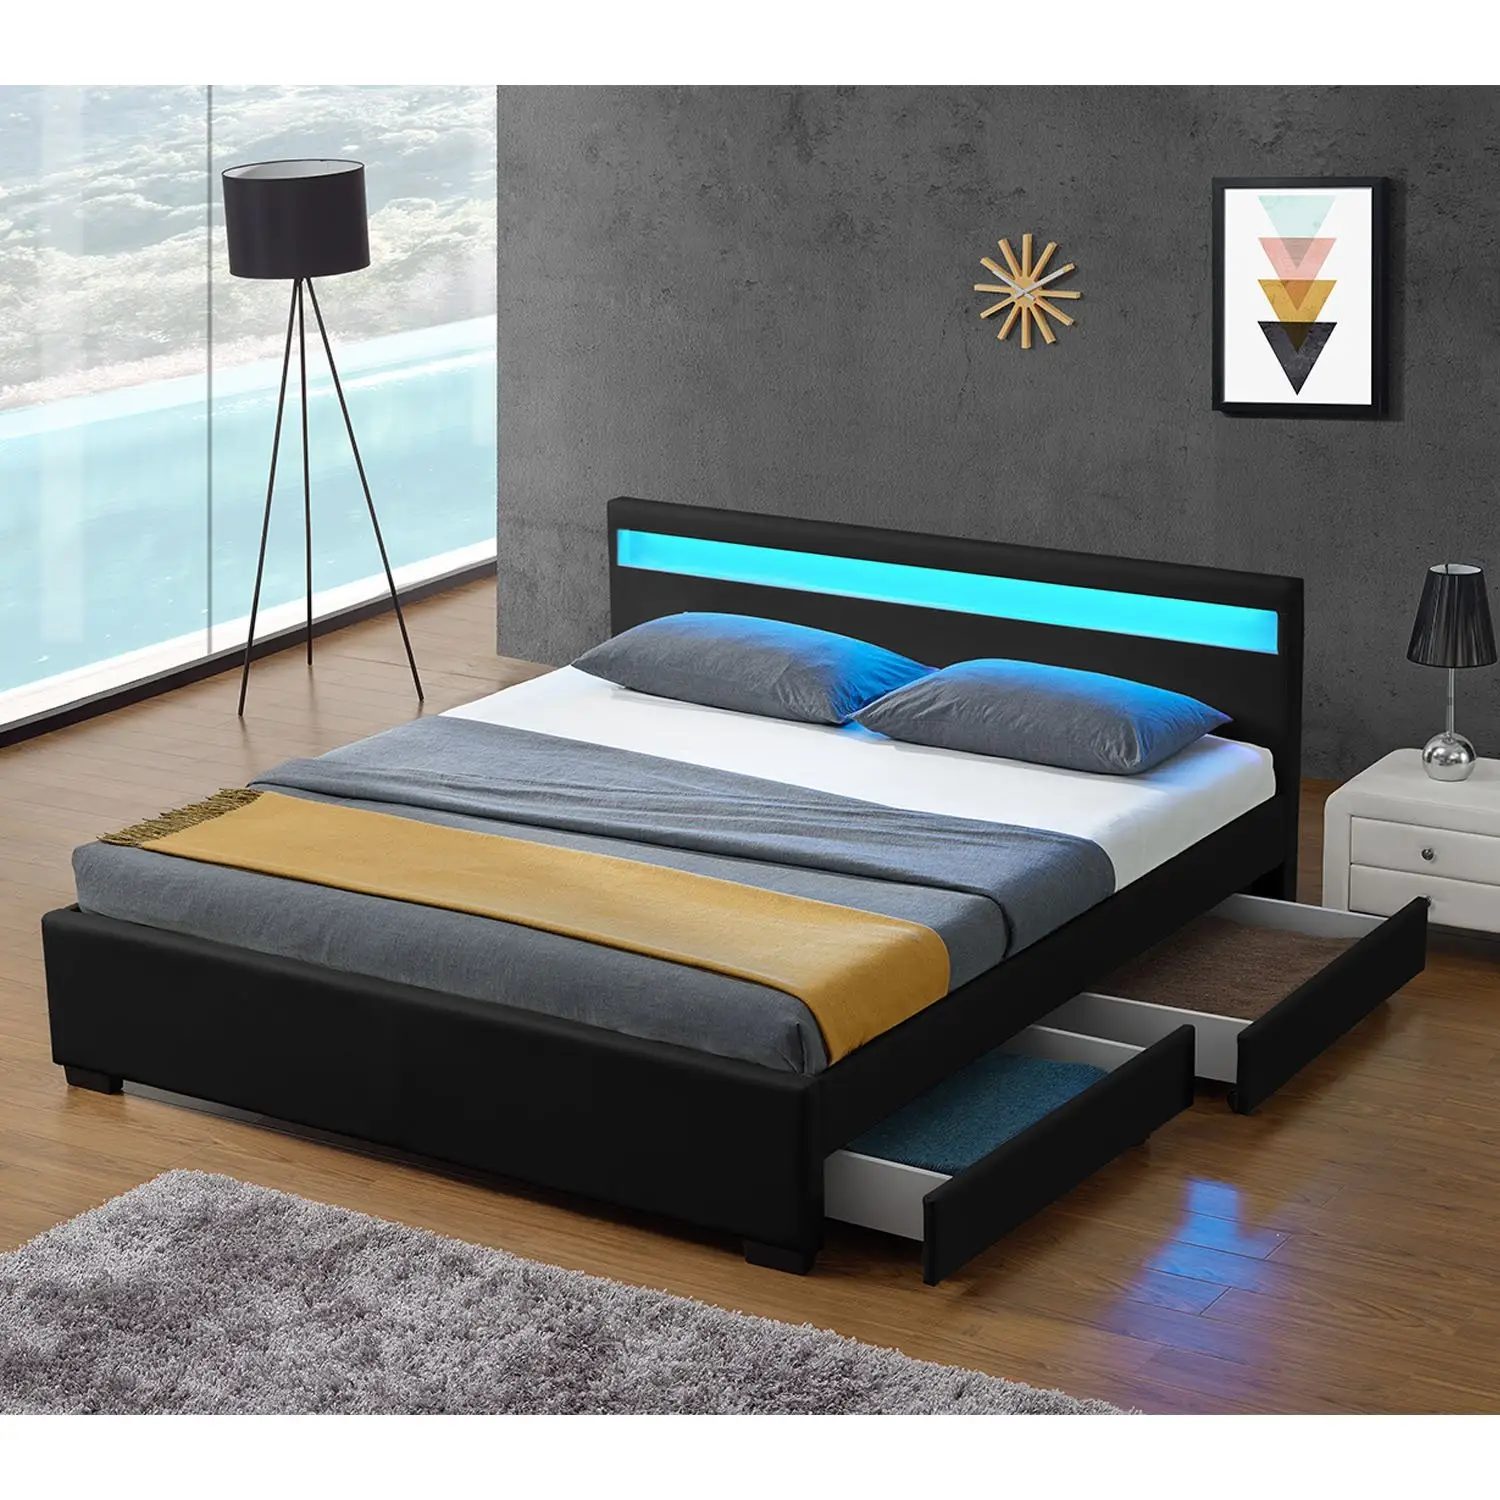 인기있는 새로운 디자인 조명 헤드 보드 침실 가구 전체 크기 현대 저장 전기 침대 덮개를 씌운 가죽 침대 프레임